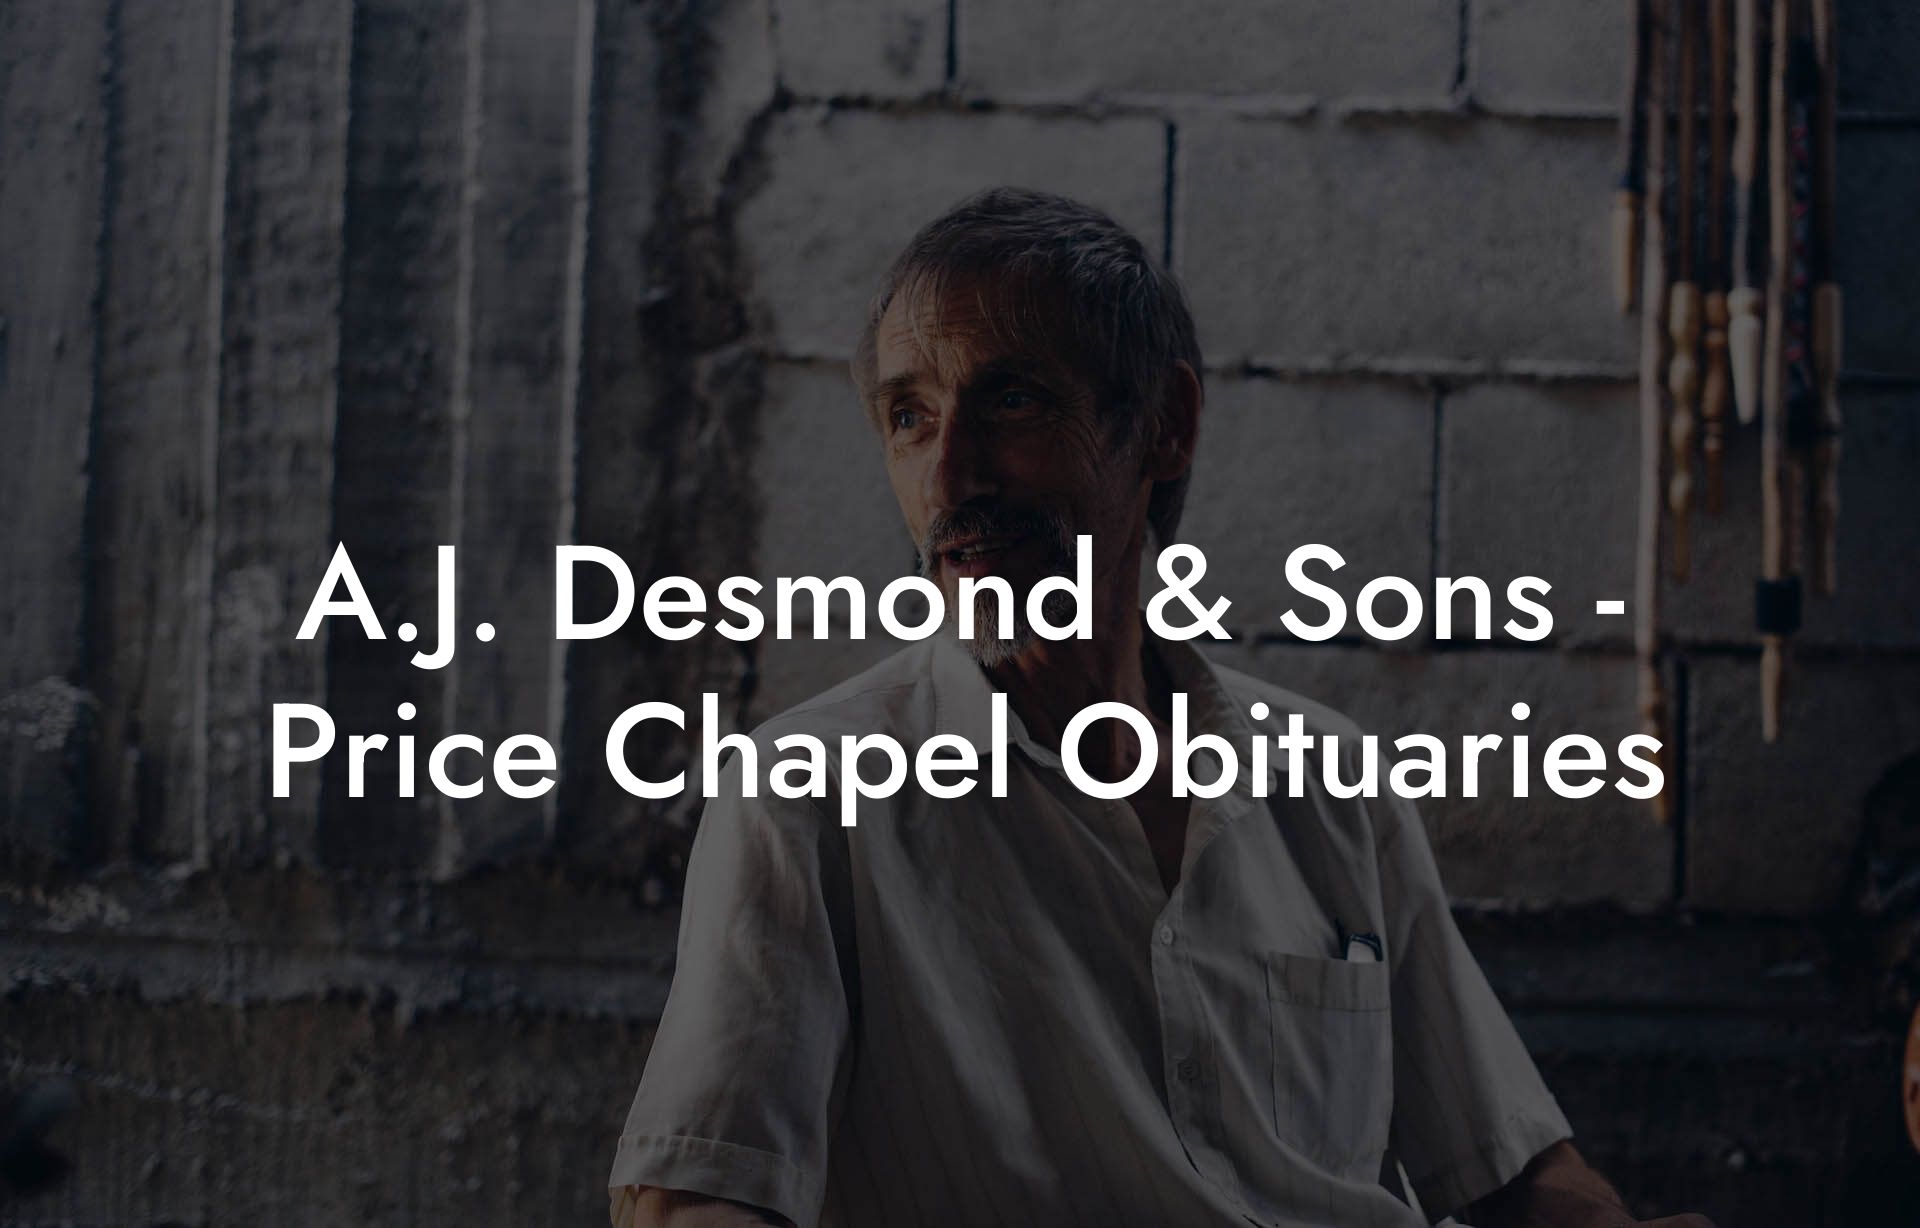 A.J. Desmond & Sons - Price Chapel Obituaries